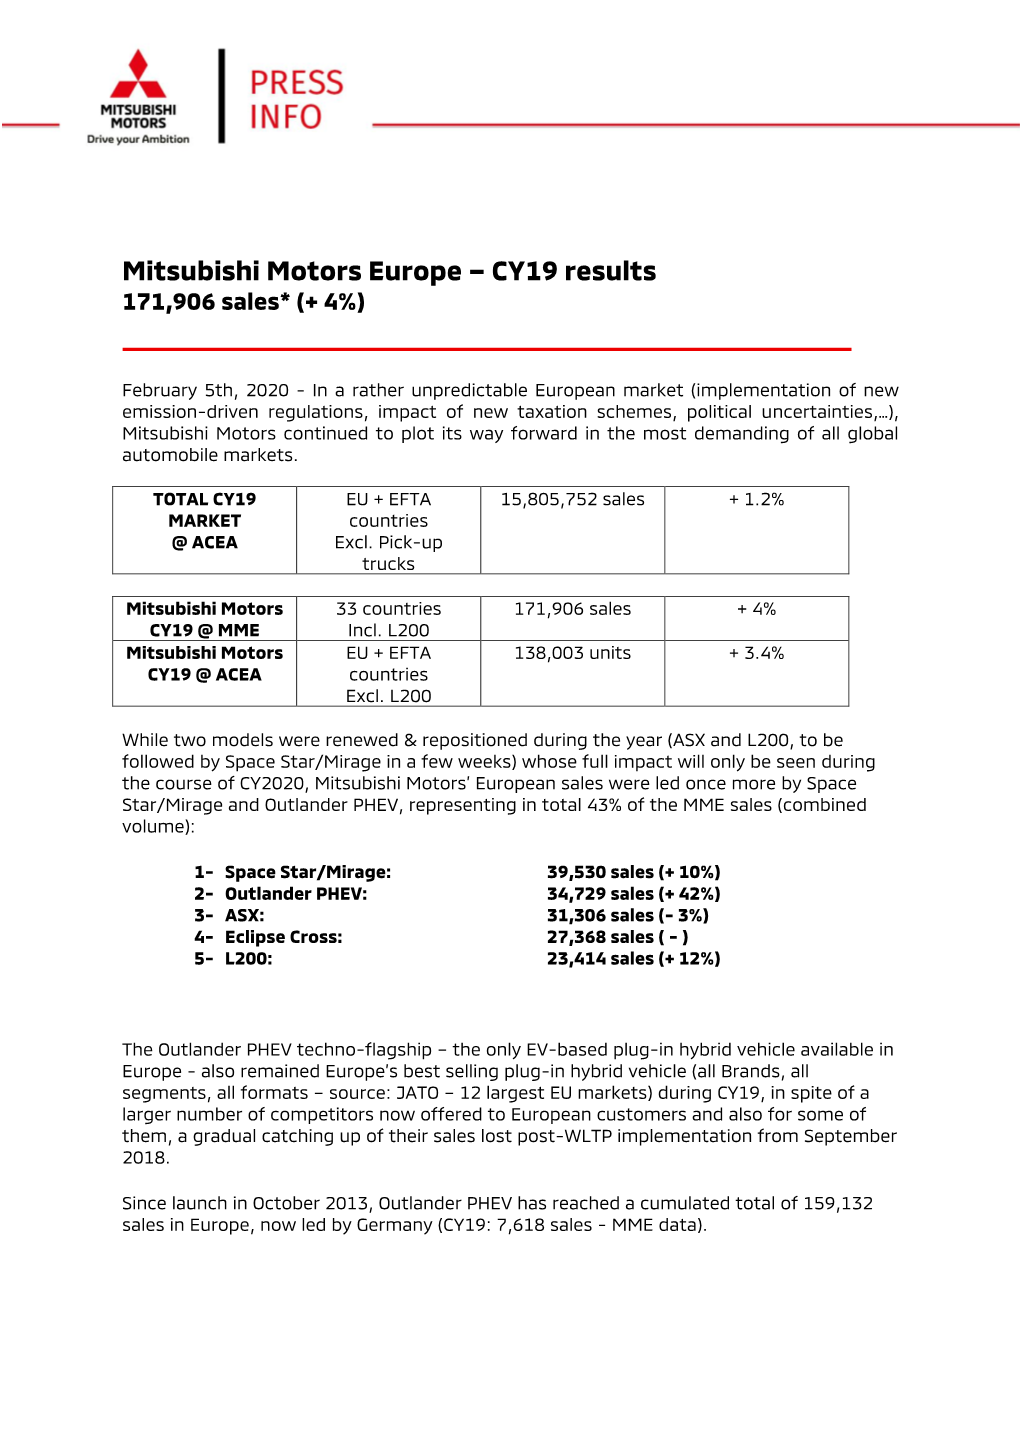 Mitsubishi Motors Europe – CY19 Results 171,906 Sales* (+ 4%)